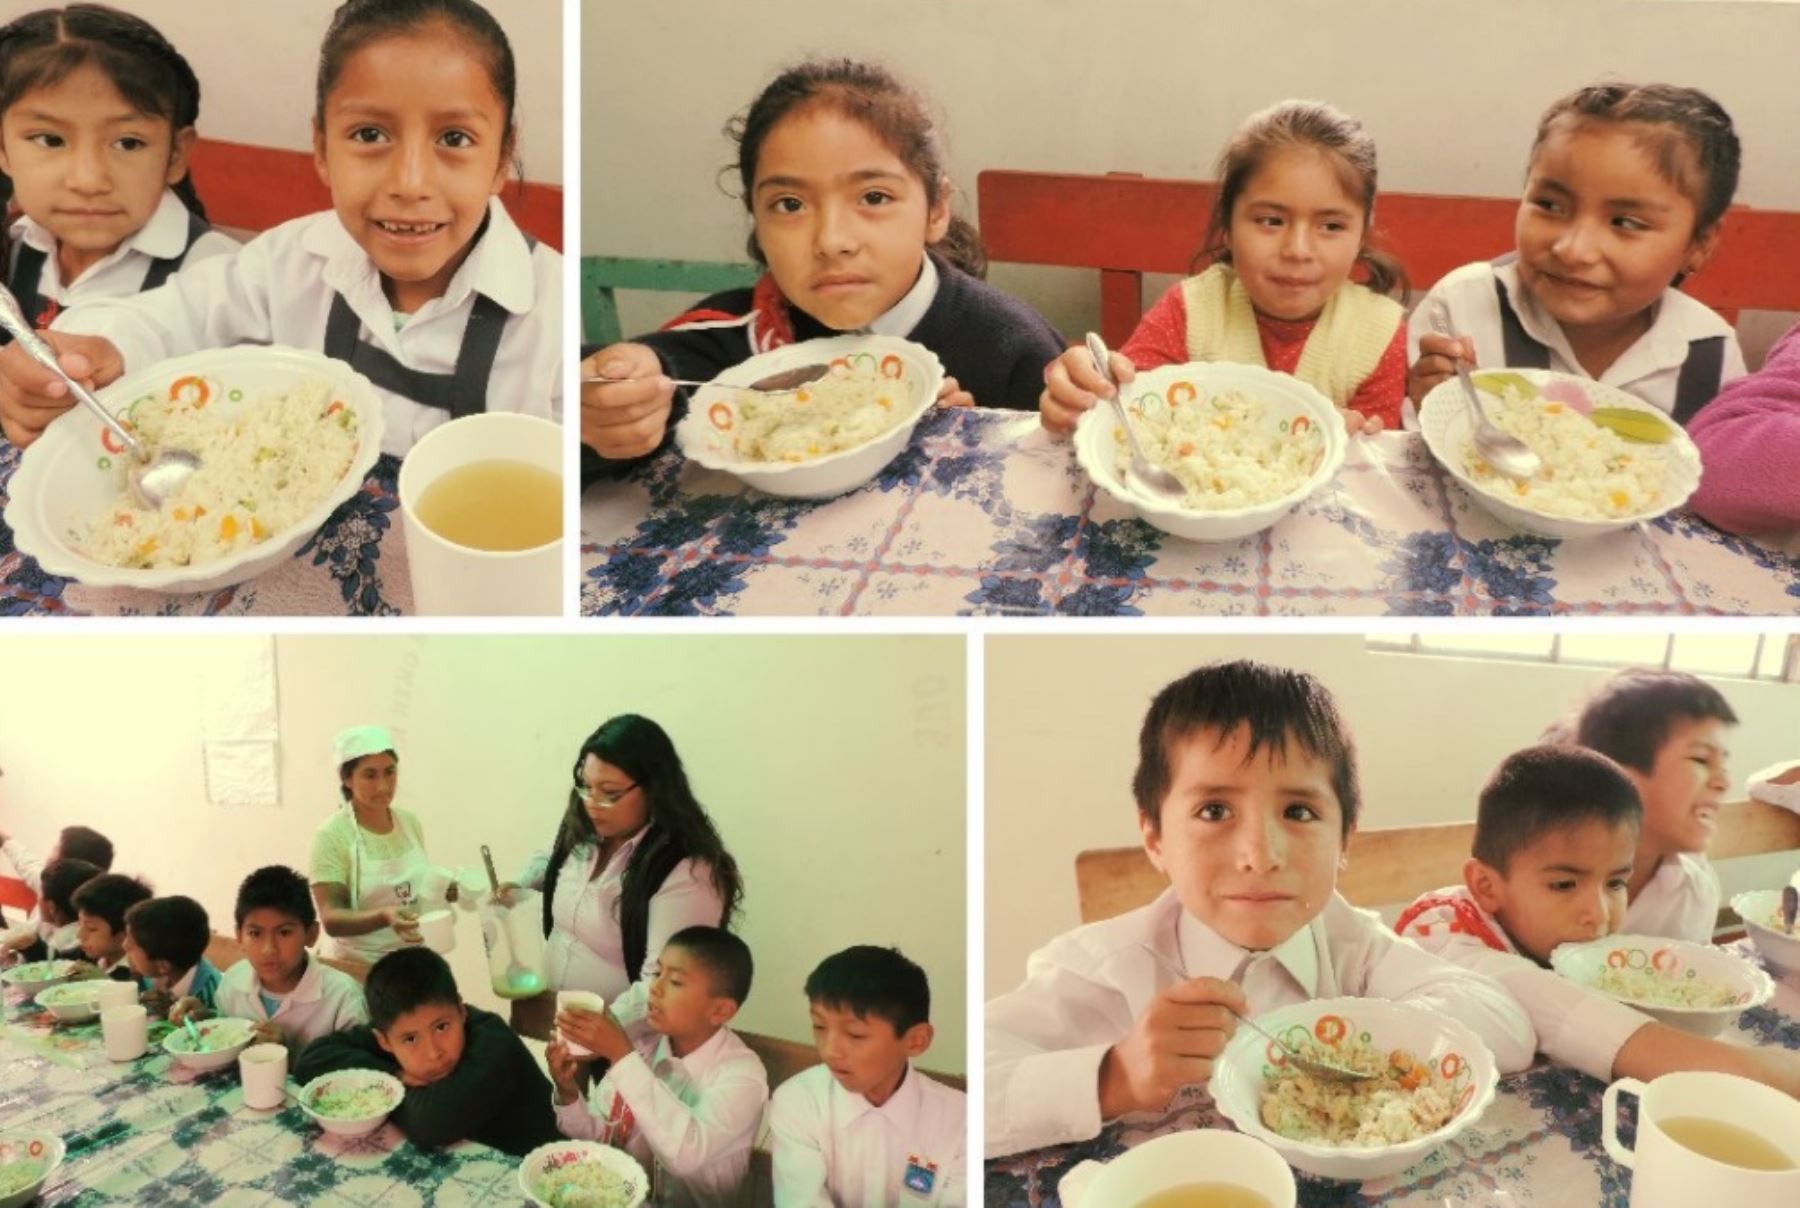 El Programa Nacional de Alimentación Escolar Qali Warma, del Ministerio de Desarrollo e Inclusión Social (Midis), reanudó el servicio alimentario a escala nacional en más de 63,000 instituciones educativas, informó hoy la directora ejecutiva de dicho programa social, Carla Fajardo.